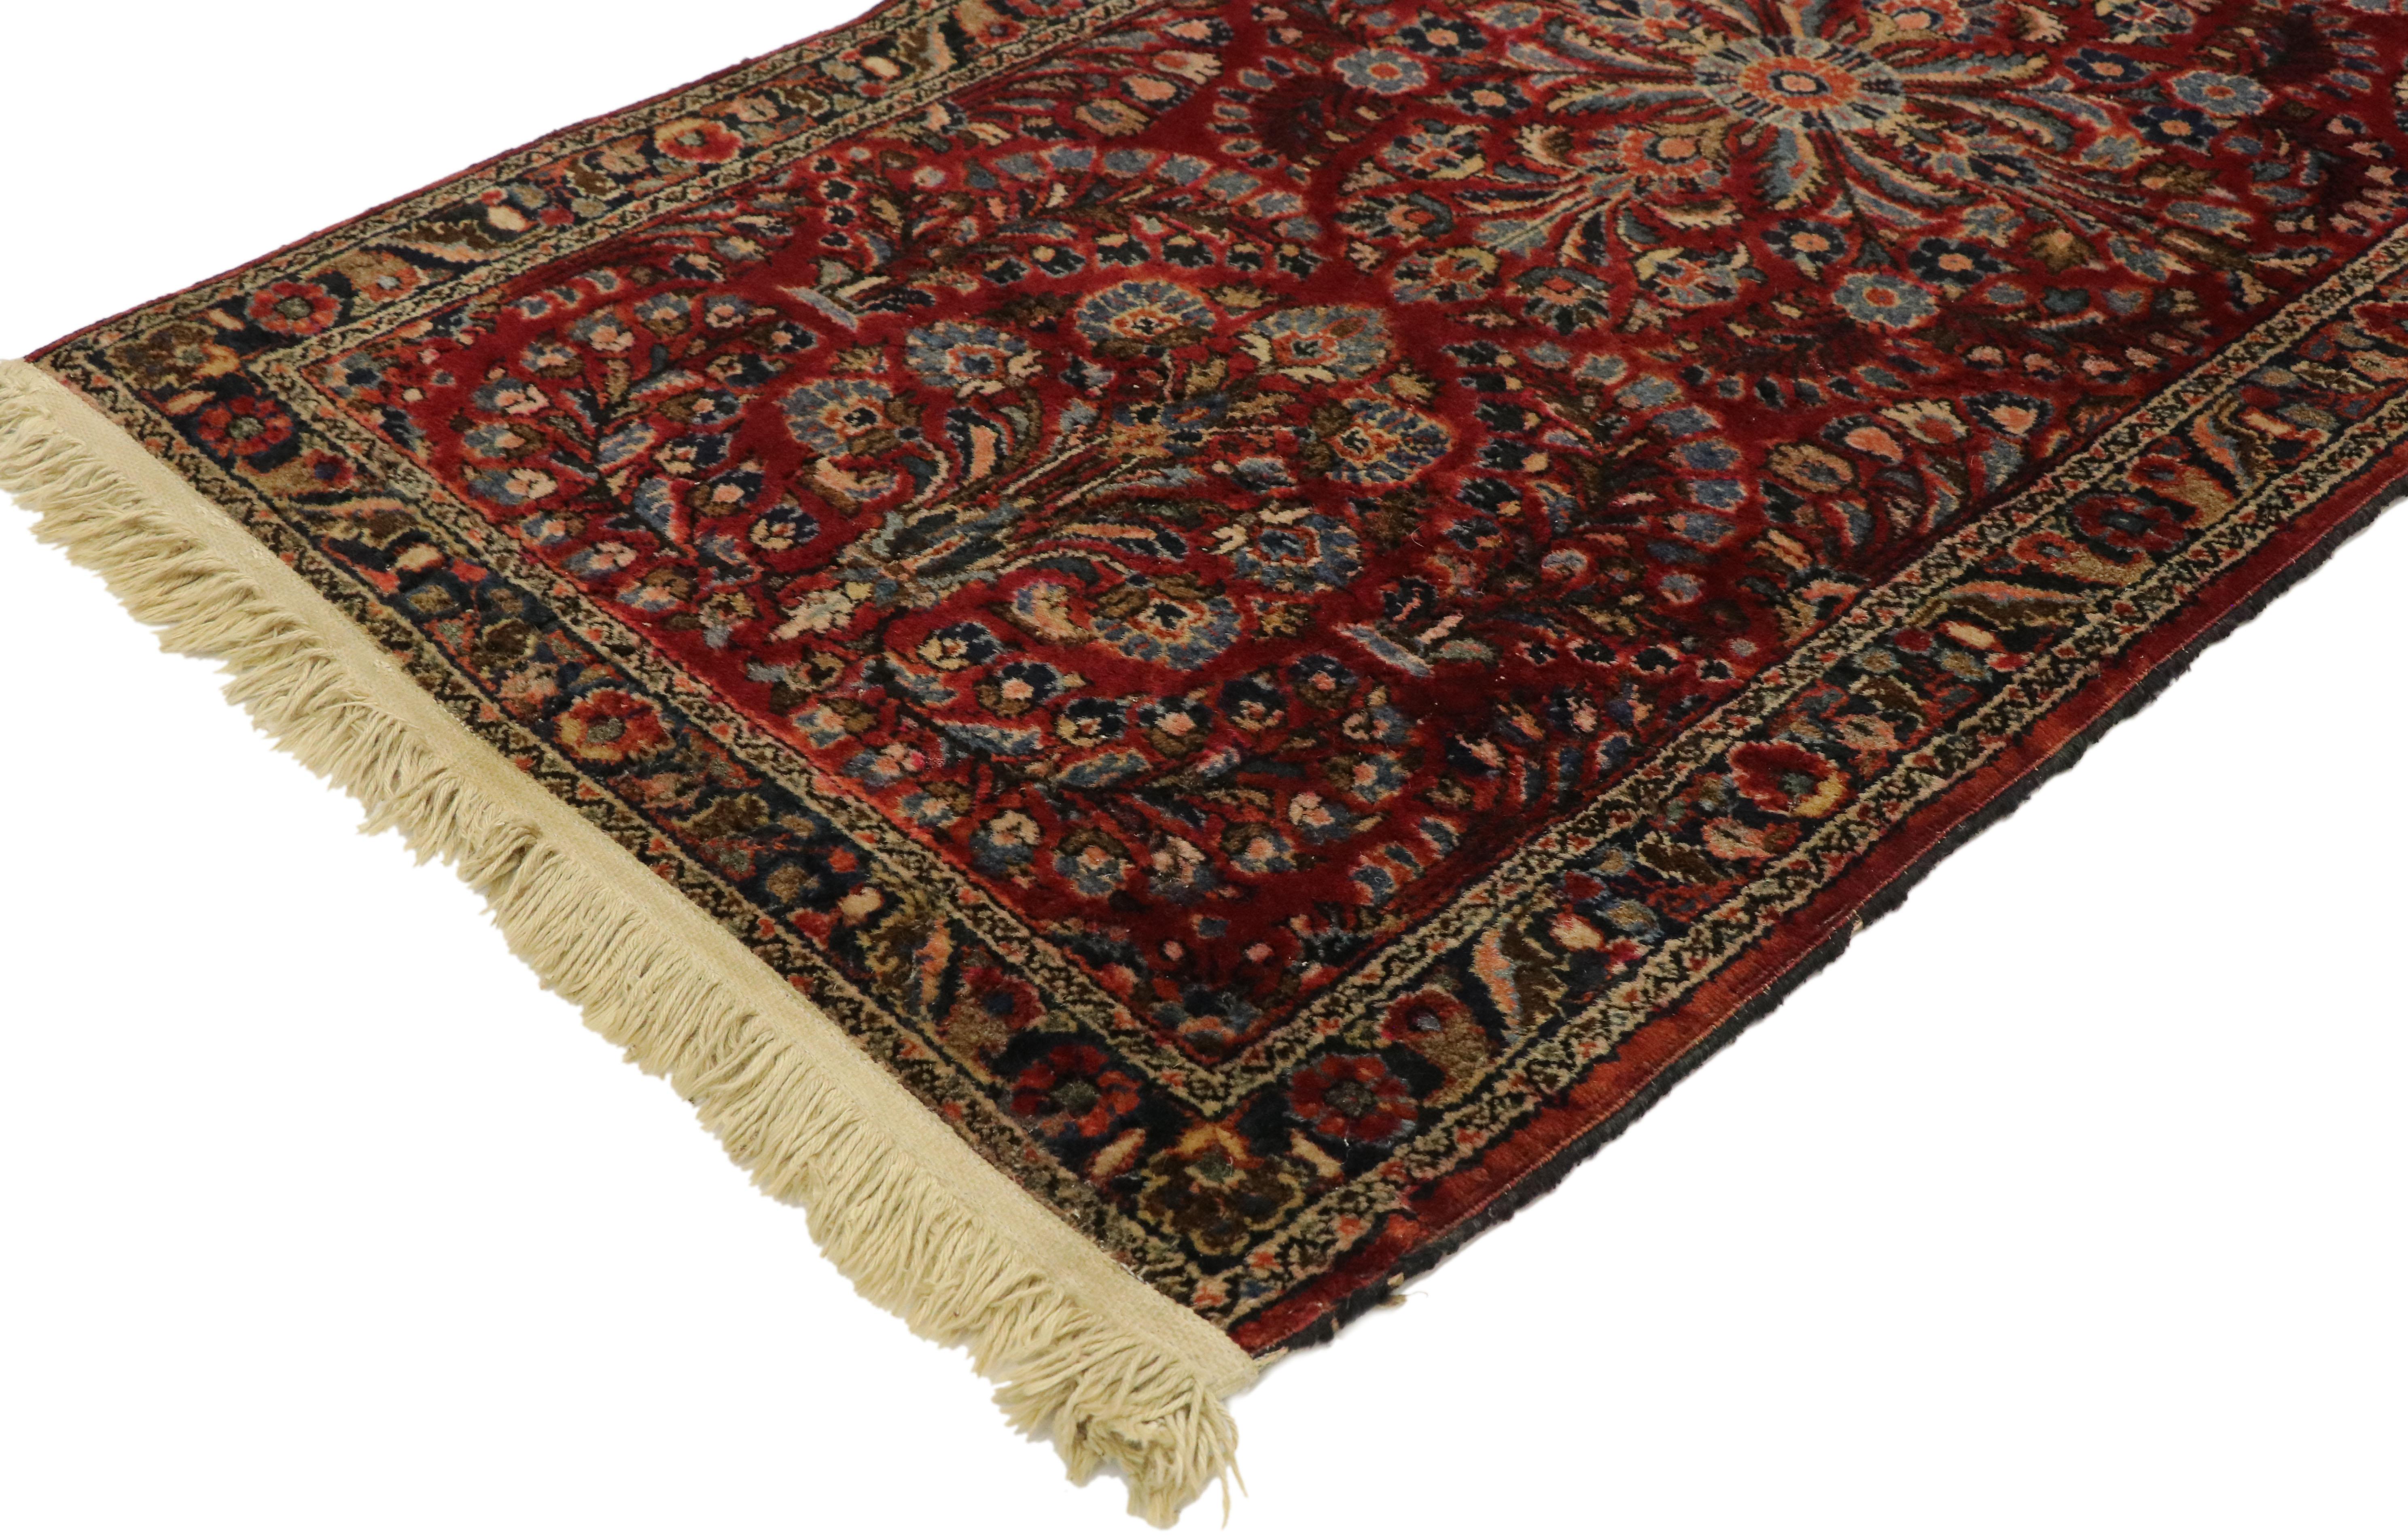 Dieser sehr begehrte antike persische Sarouk-Teppich zeigt ein florales Allover-Muster mit einer raffinierten Farbpalette, die seine lebendige Komposition beleuchtet. Das reizvolle Allover-Muster aus markanten Palmetten und botanischen Motiven mit